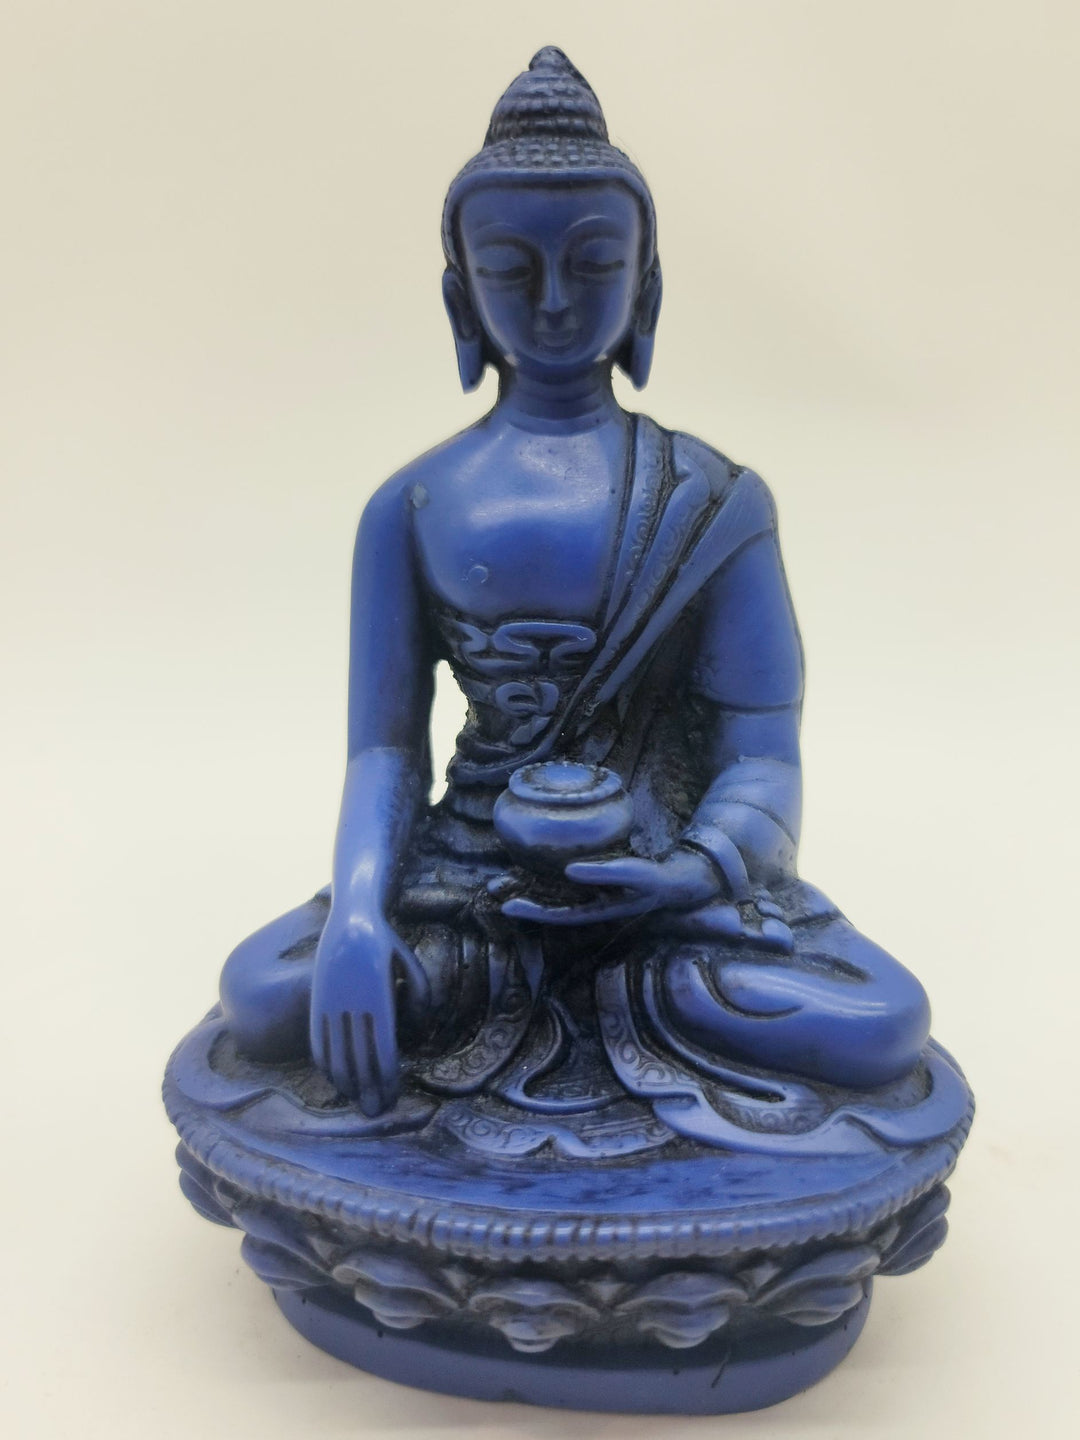 Painted Ceramic Medicine Buddha Statue